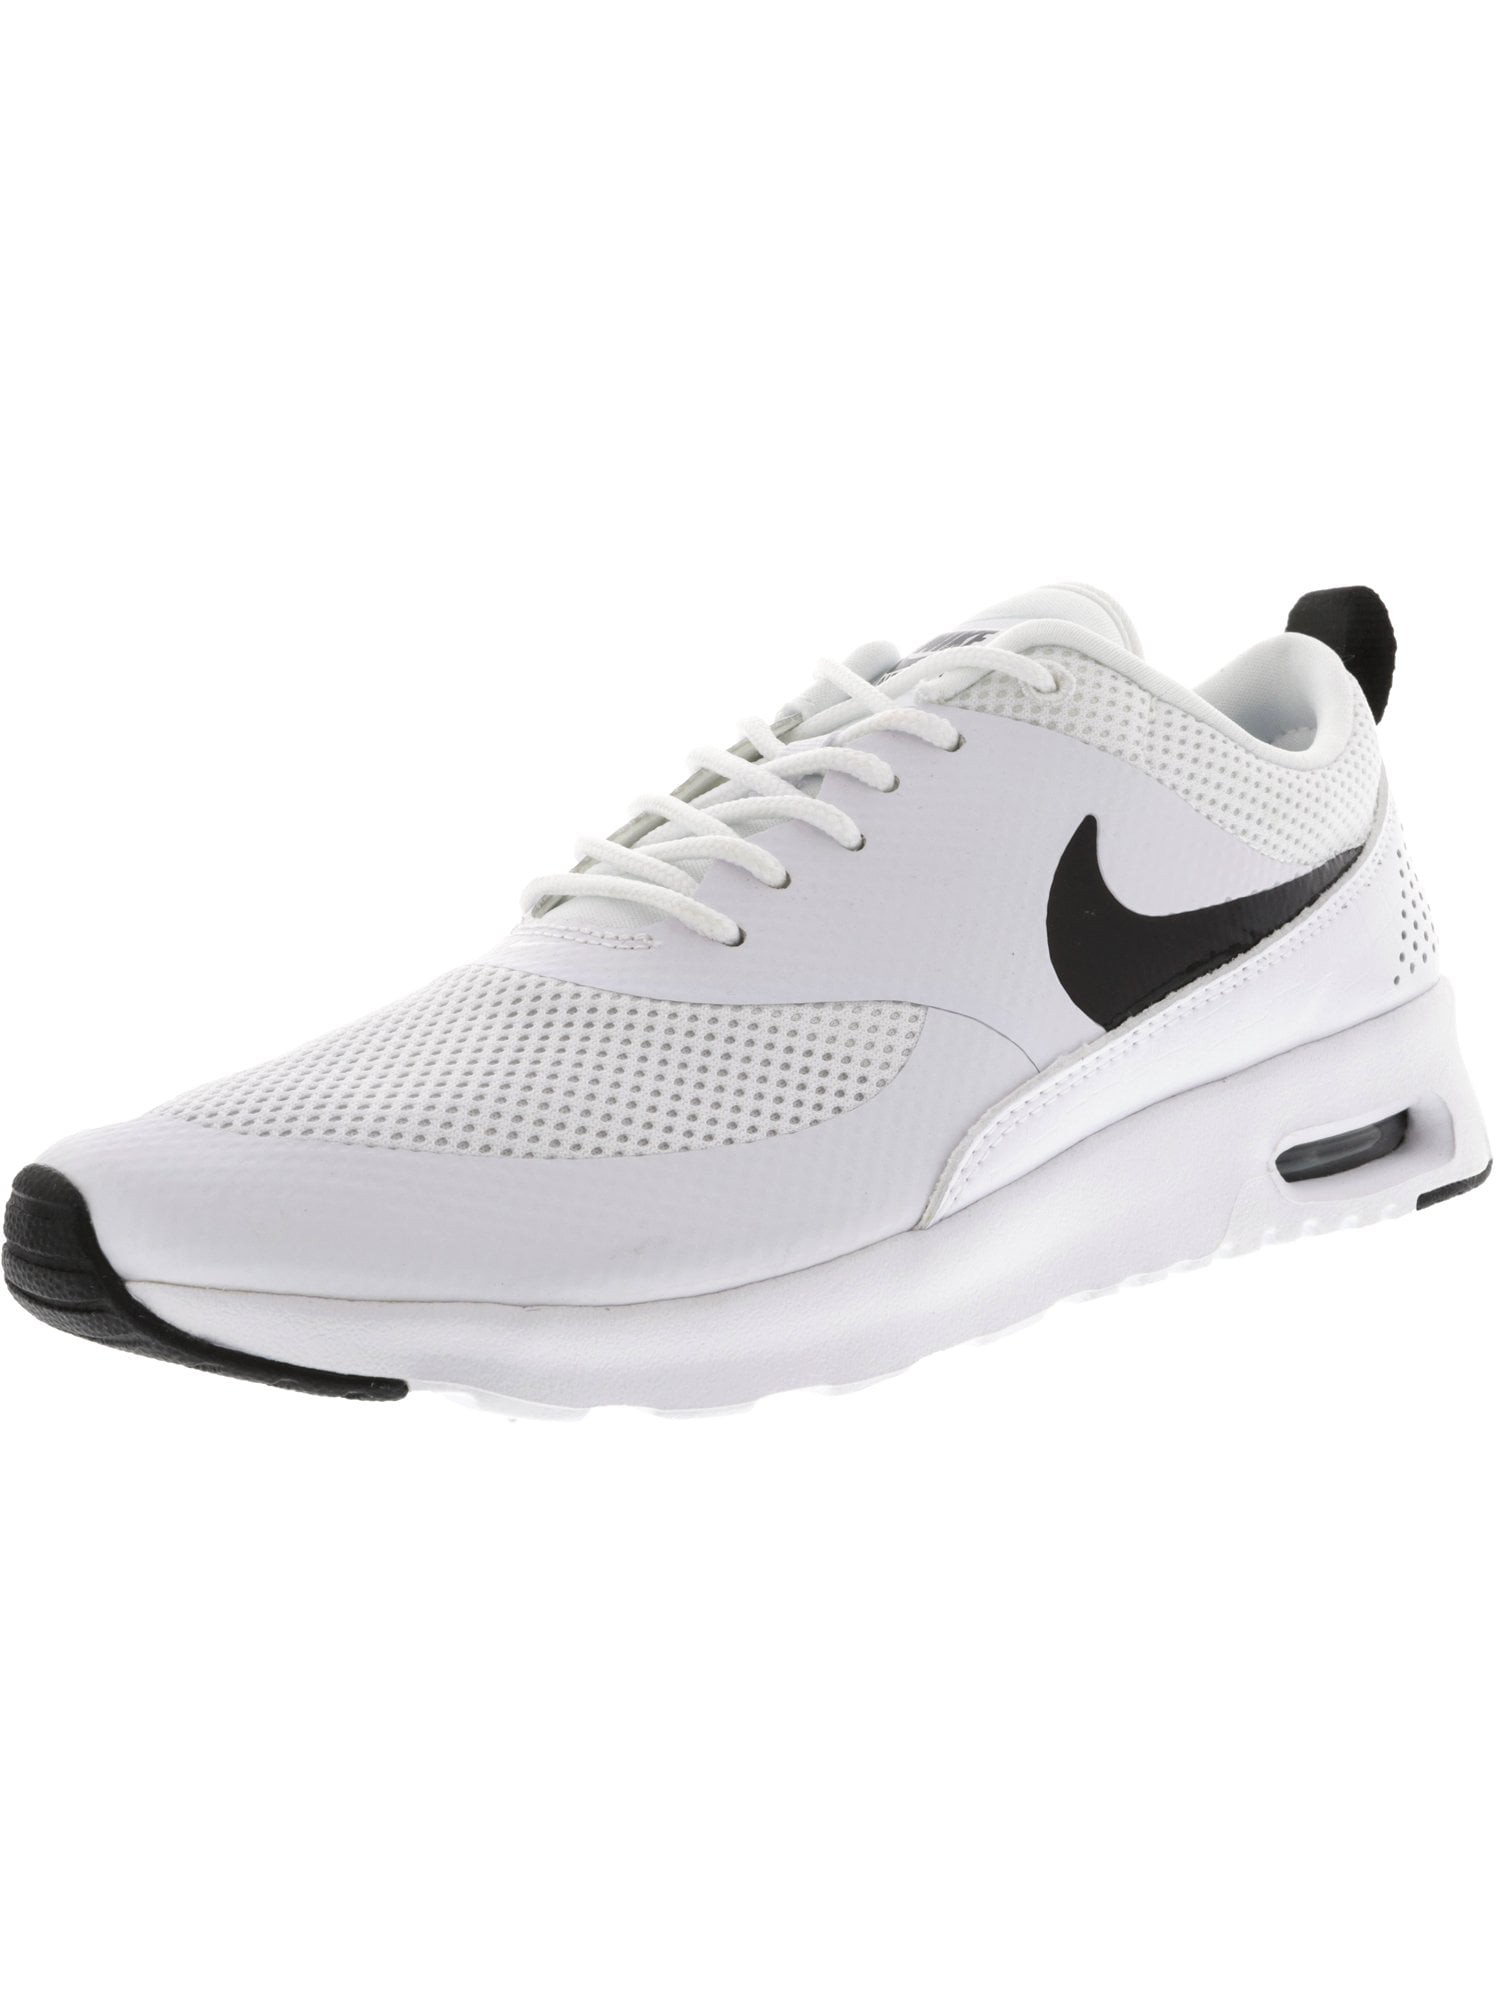 Maak het zwaar Aan het liegen Sluiting Nike Women's Air Max Thea White / Black Ankle-High Running Shoe - 8M -  Walmart.com